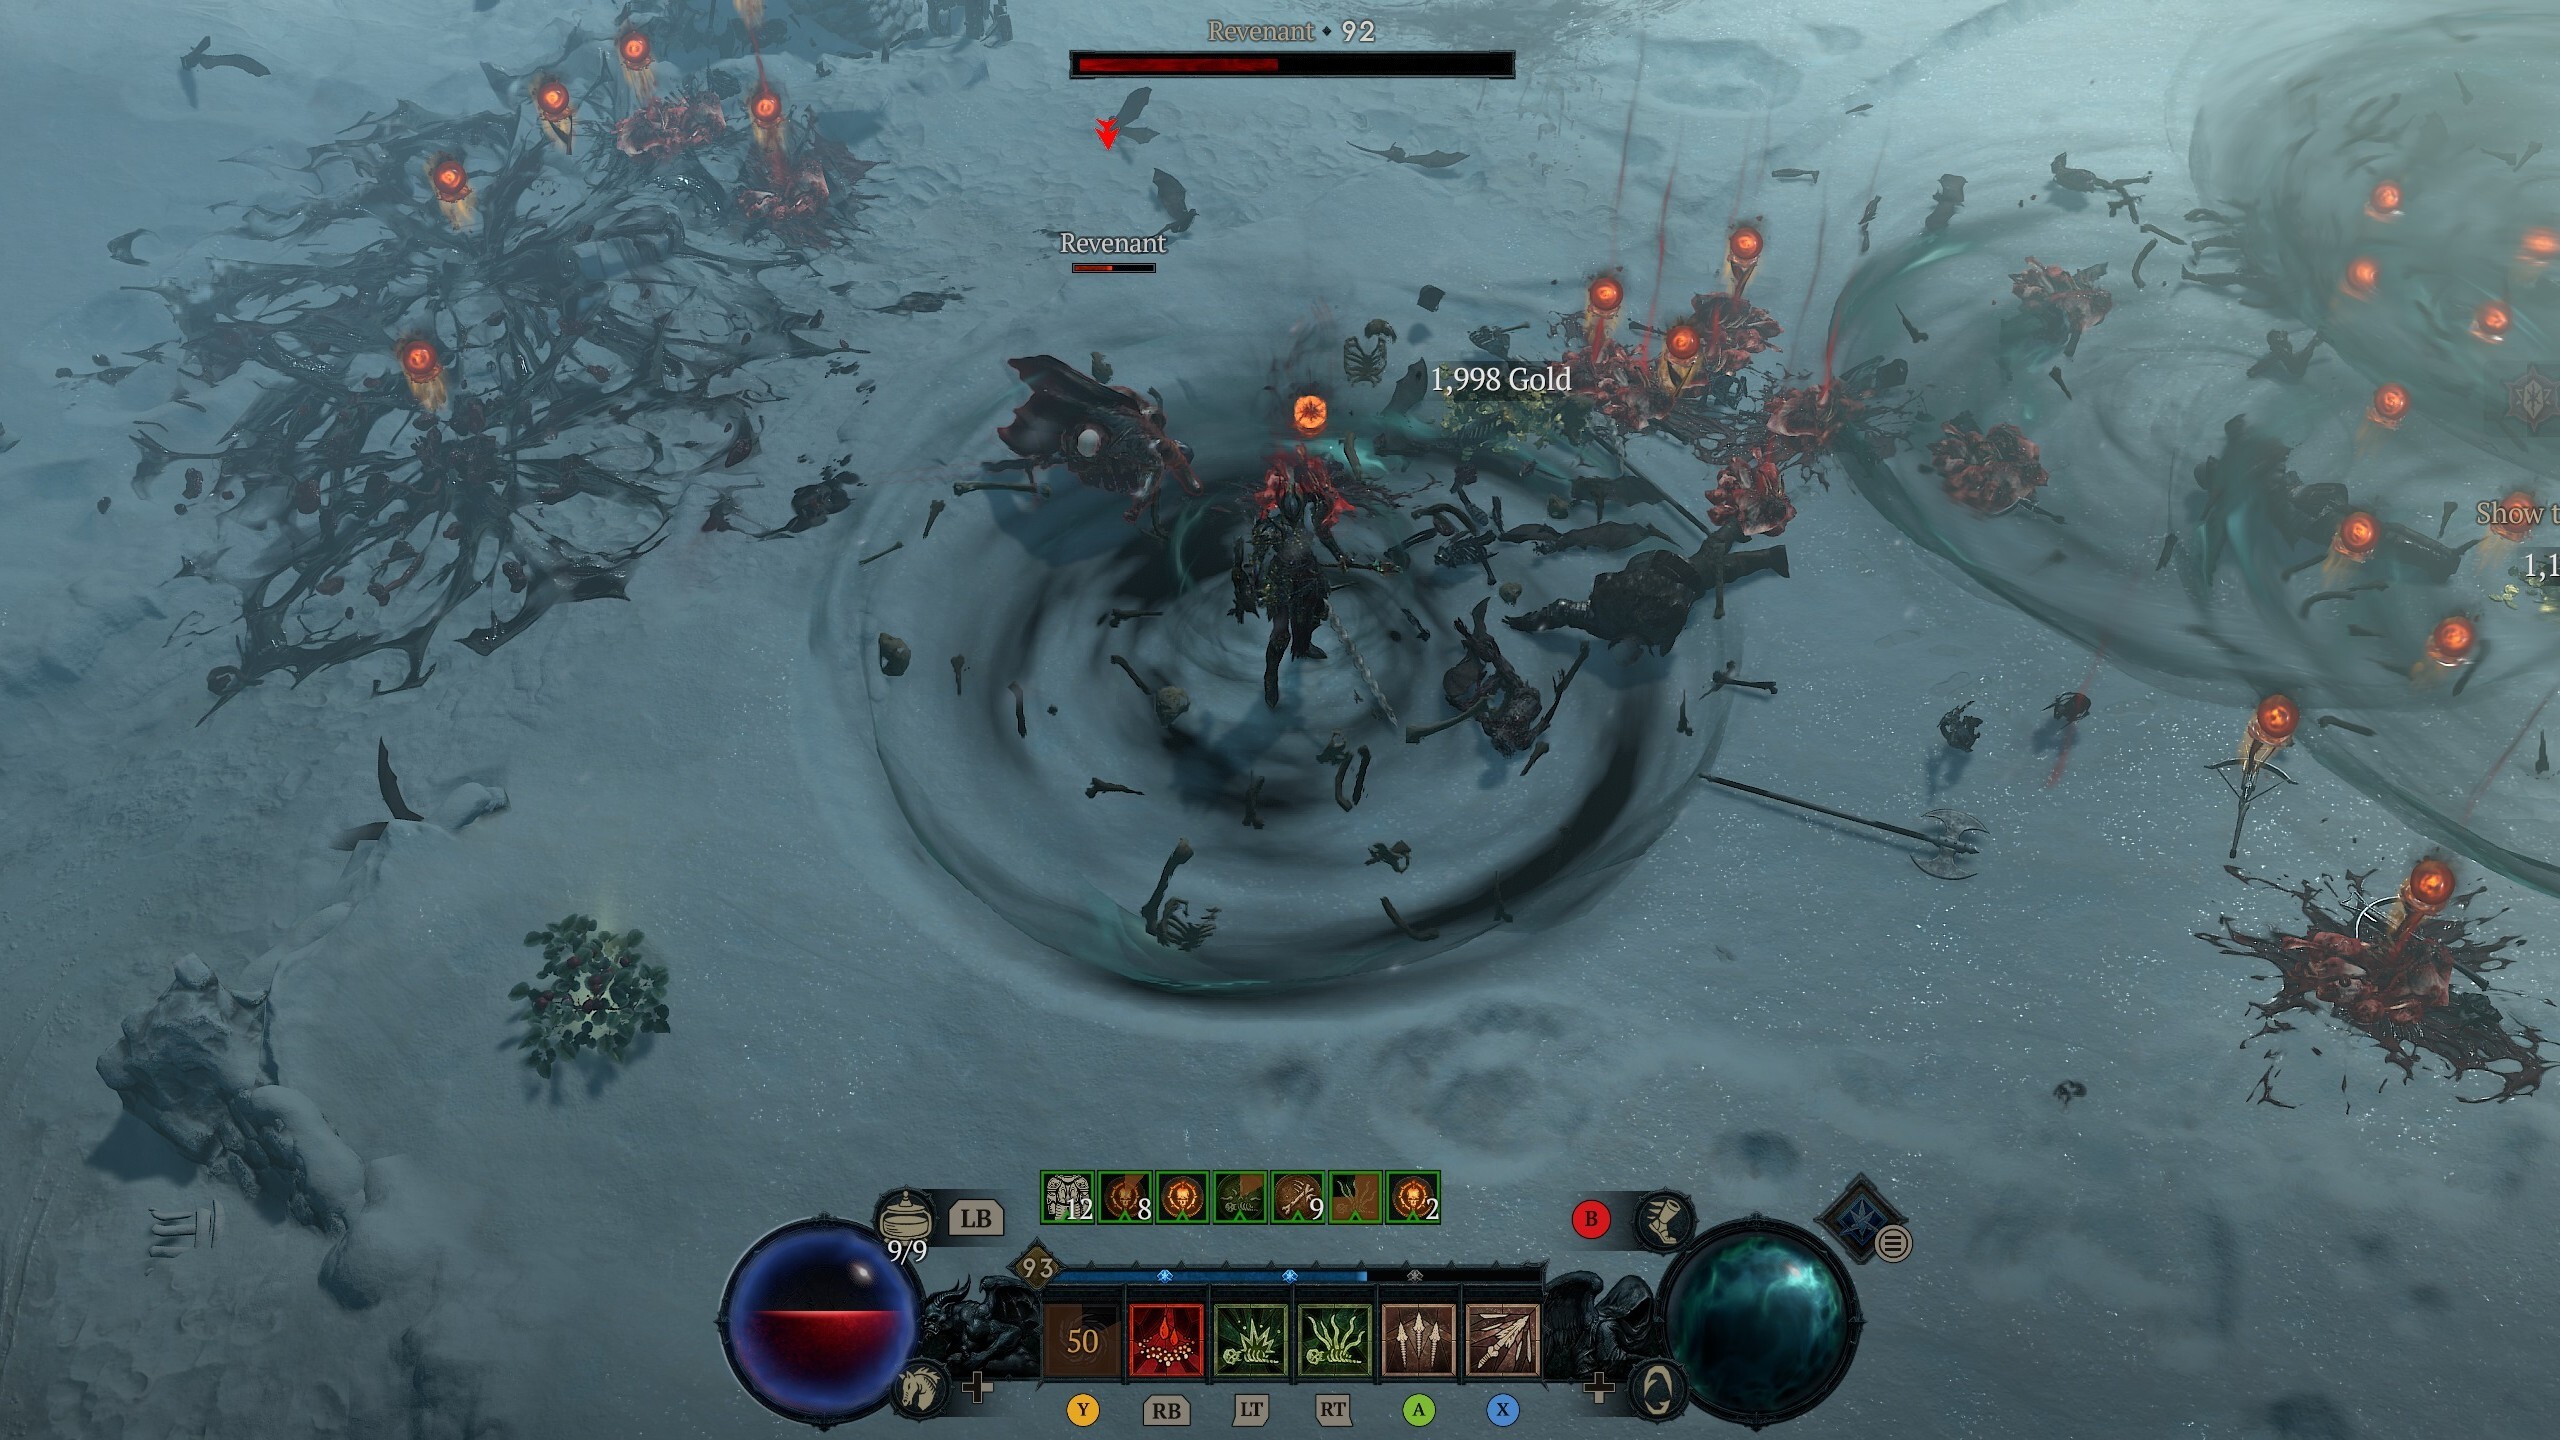 Une capture d'écran de Diablo 4 montrant un nécromancien entouré de sa capacité active Bone Storm, dans un champ enneigé jonché de cadavres et d'orbes de sang.